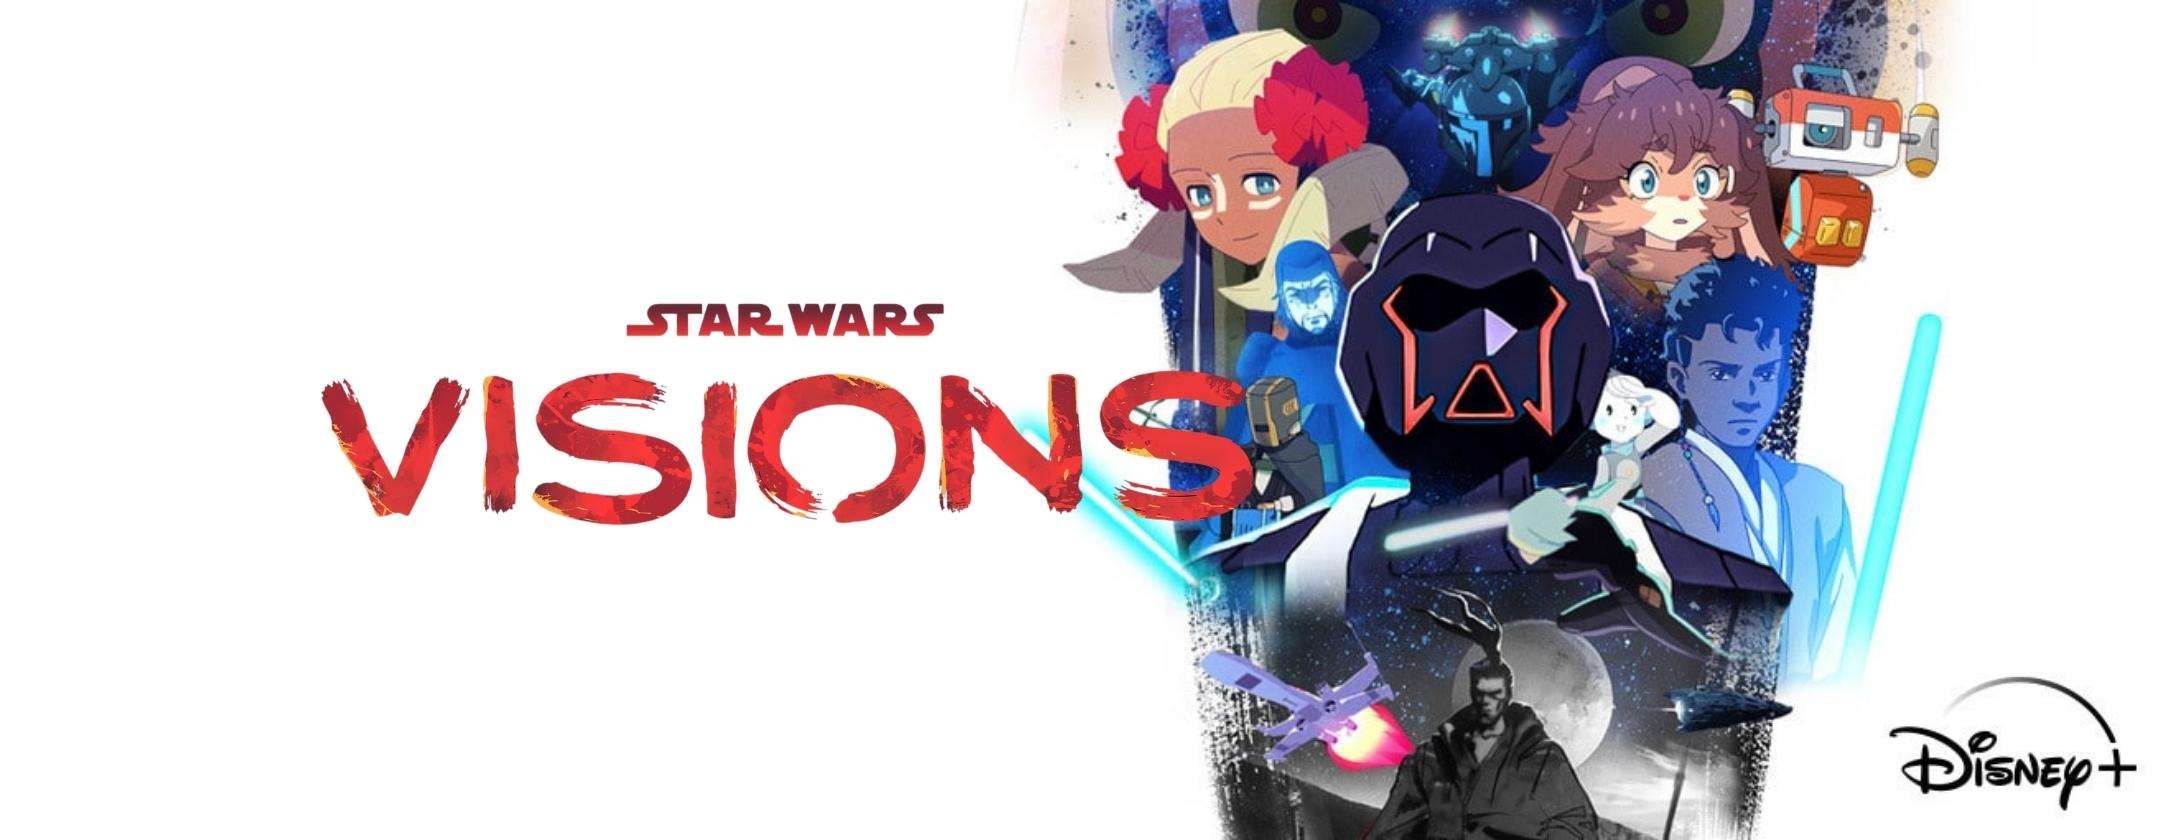 Star Wars Visions 2: buone notizie per gli abbonati Disney+